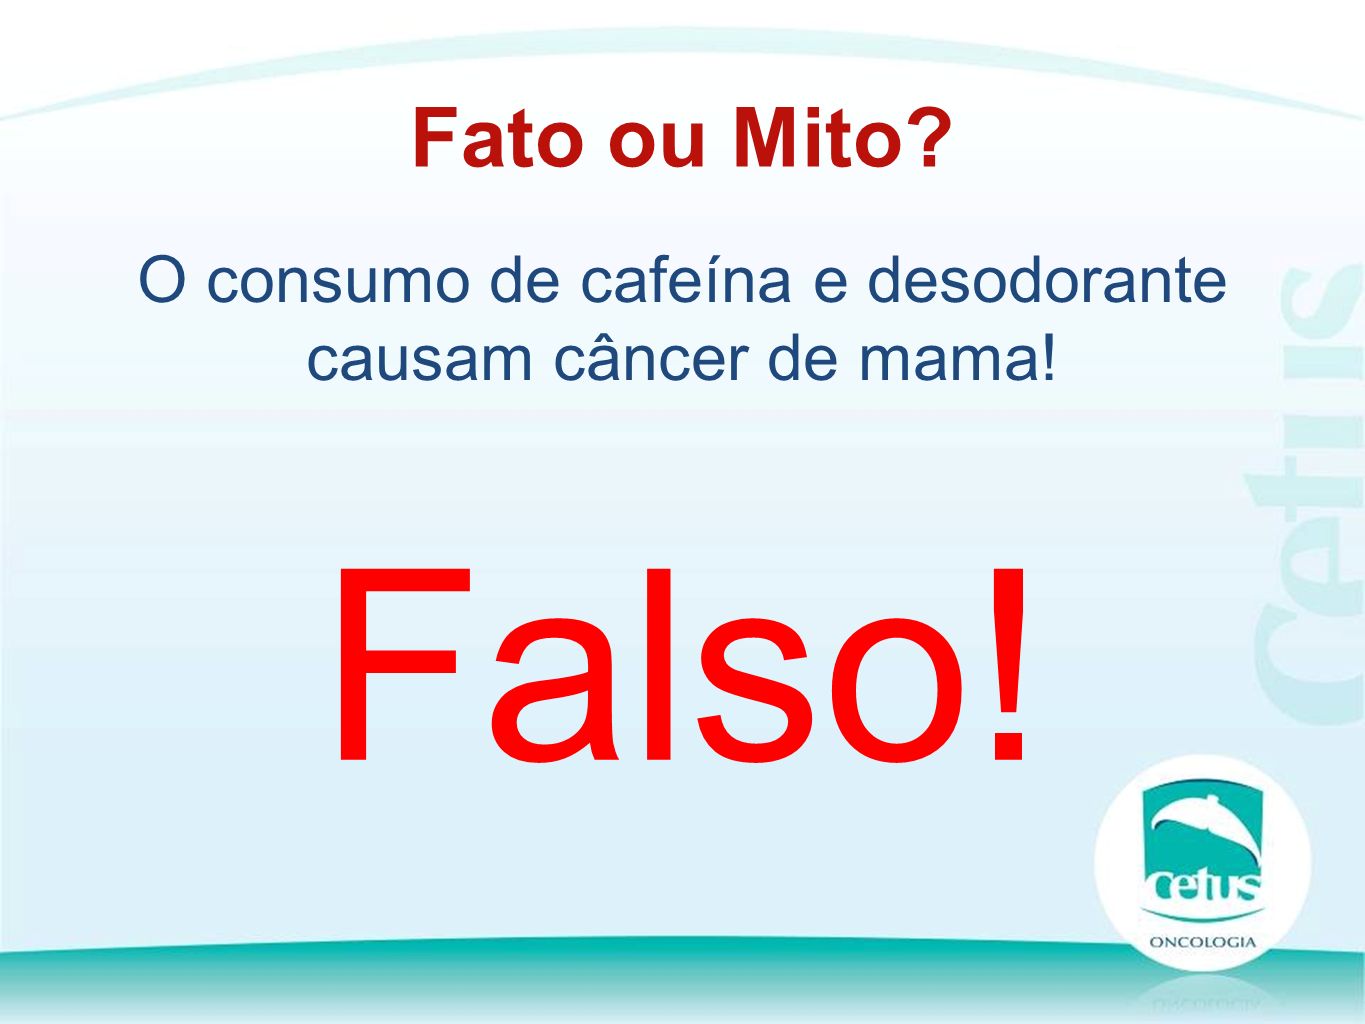 O consumo de cafeína e desodorante causam câncer de mama! Fato ou Mito Falso!